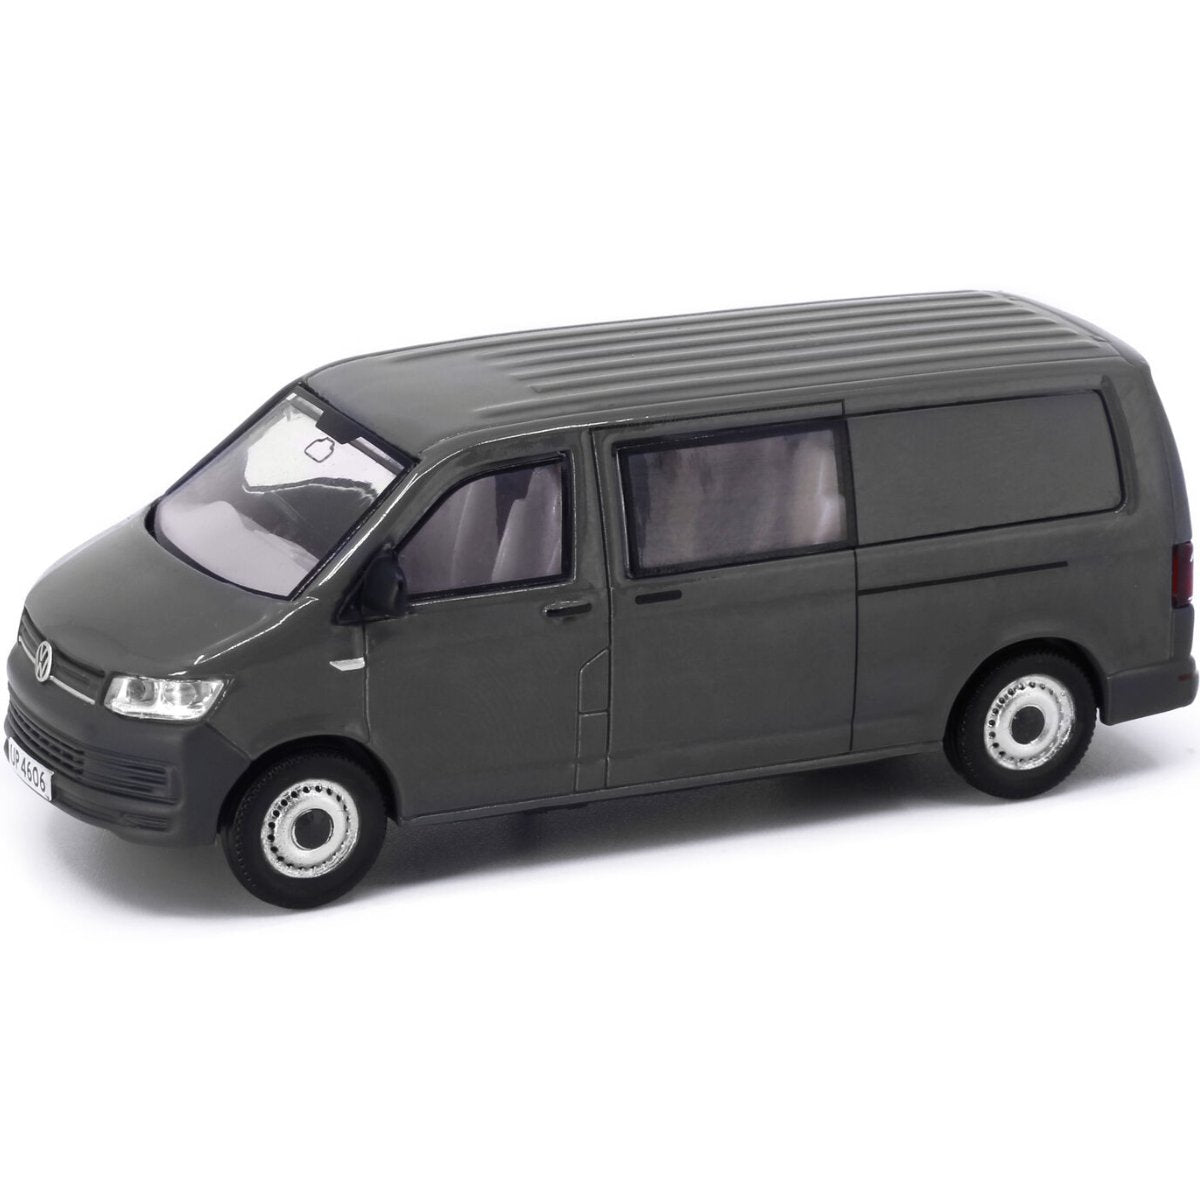 Tiny Models Volkswagen T6 Transporter Grey (1:64 Scale) - Phillips Hobbies